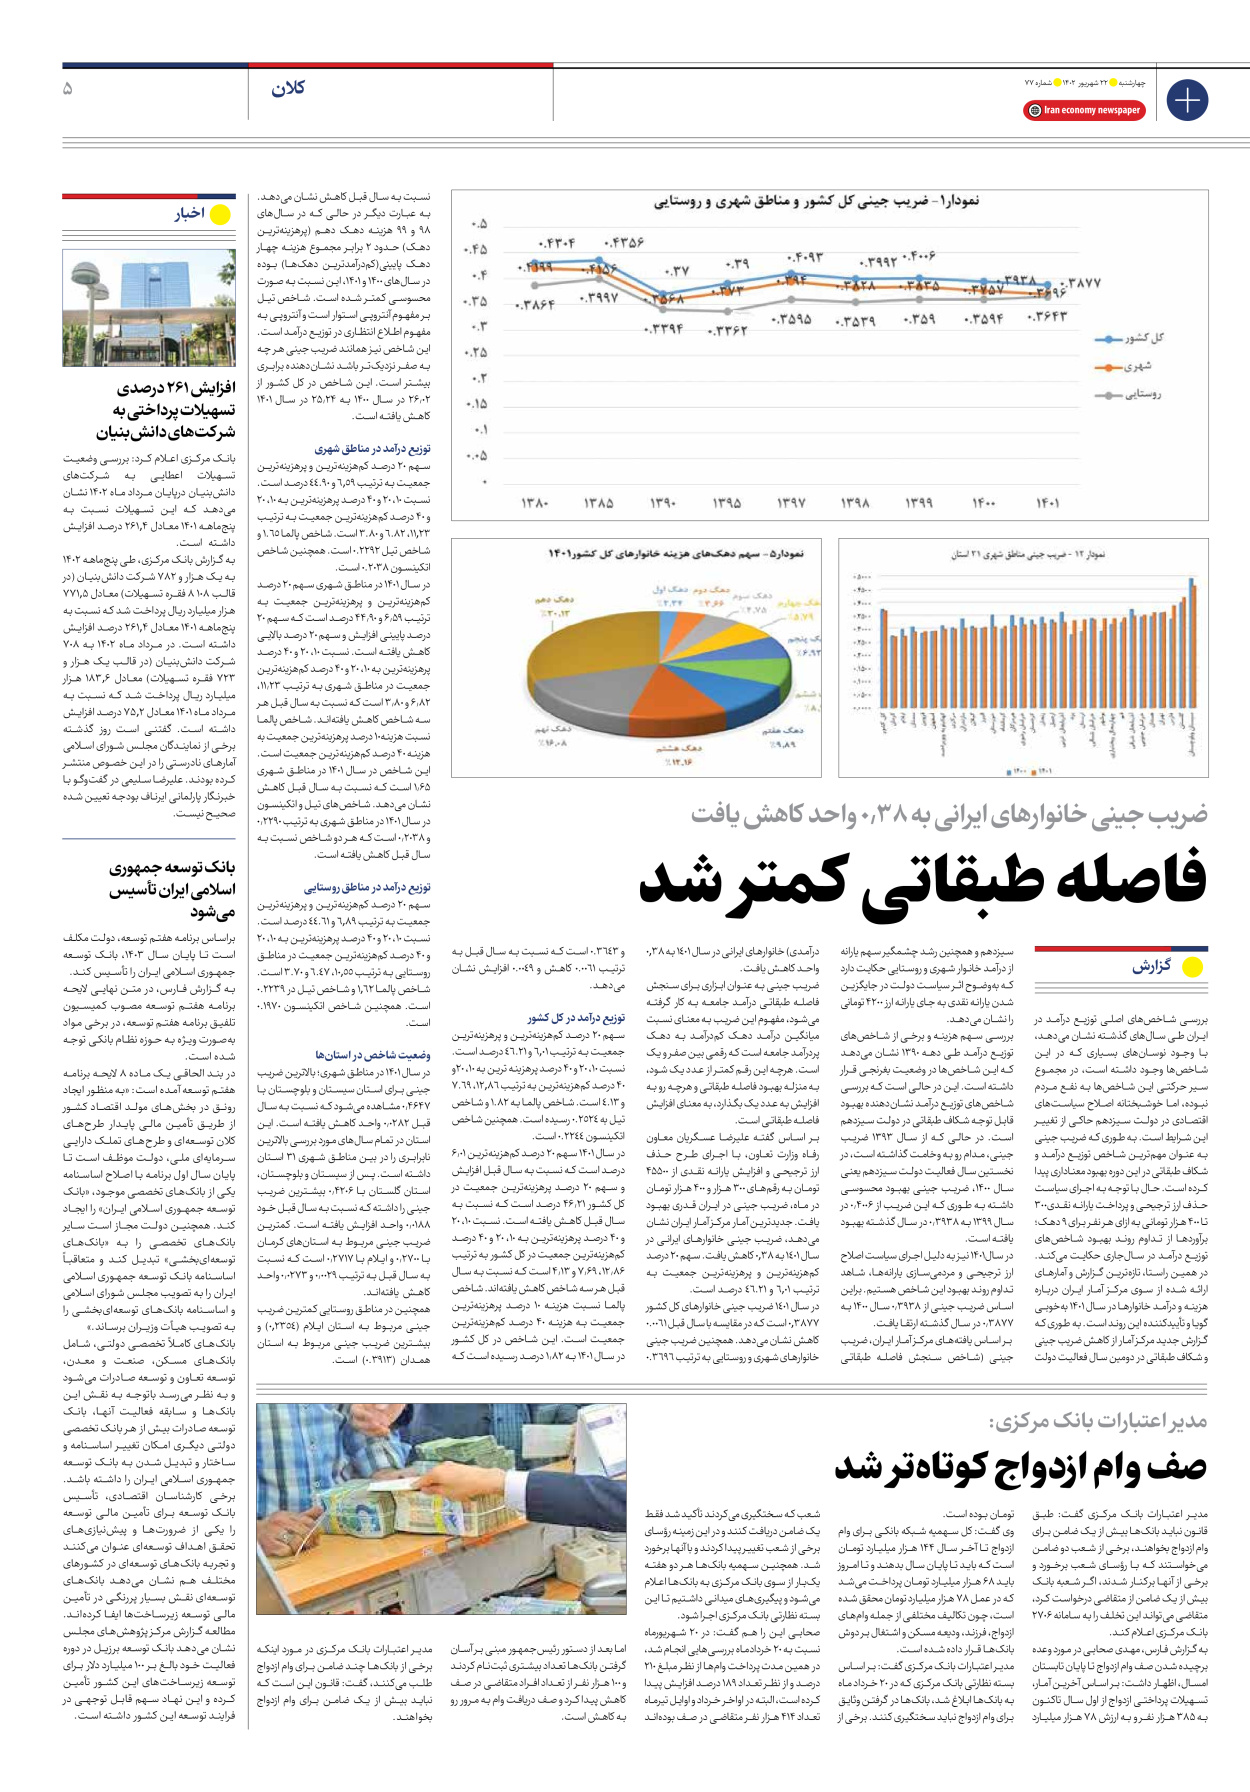 روزنامه ایران اقتصادی - شماره هفتاد و هفت - ۲۲ شهریور ۱۴۰۲ - صفحه ۵